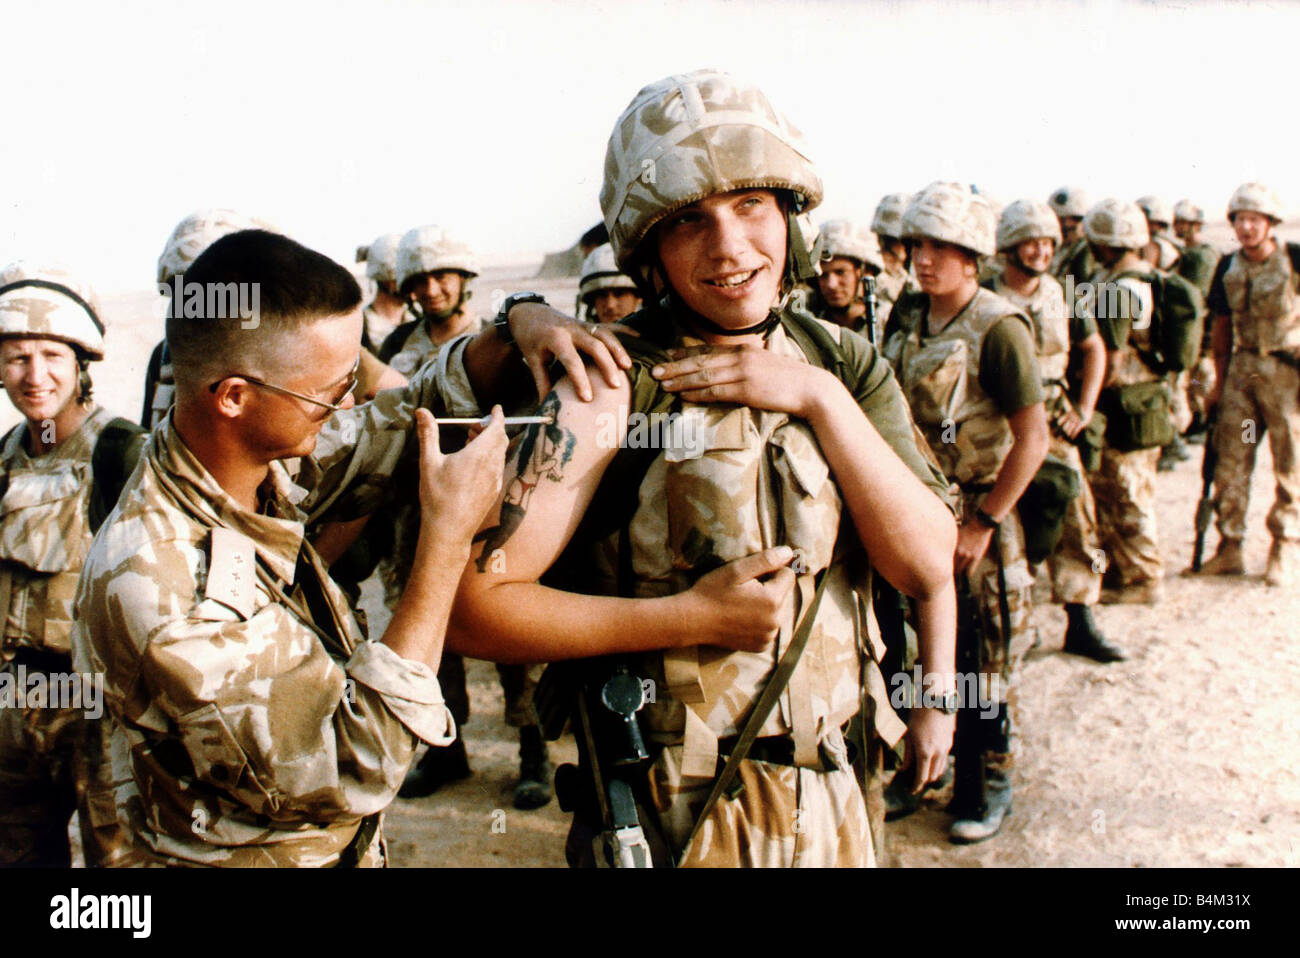 Guerra del Golfo 1990 1991 soldati ricevono il loro inoculazione contro le armi chimiche attentato durante un esercizio di formazione nel deserto prima di Operazione Desert Storm Foto Stock